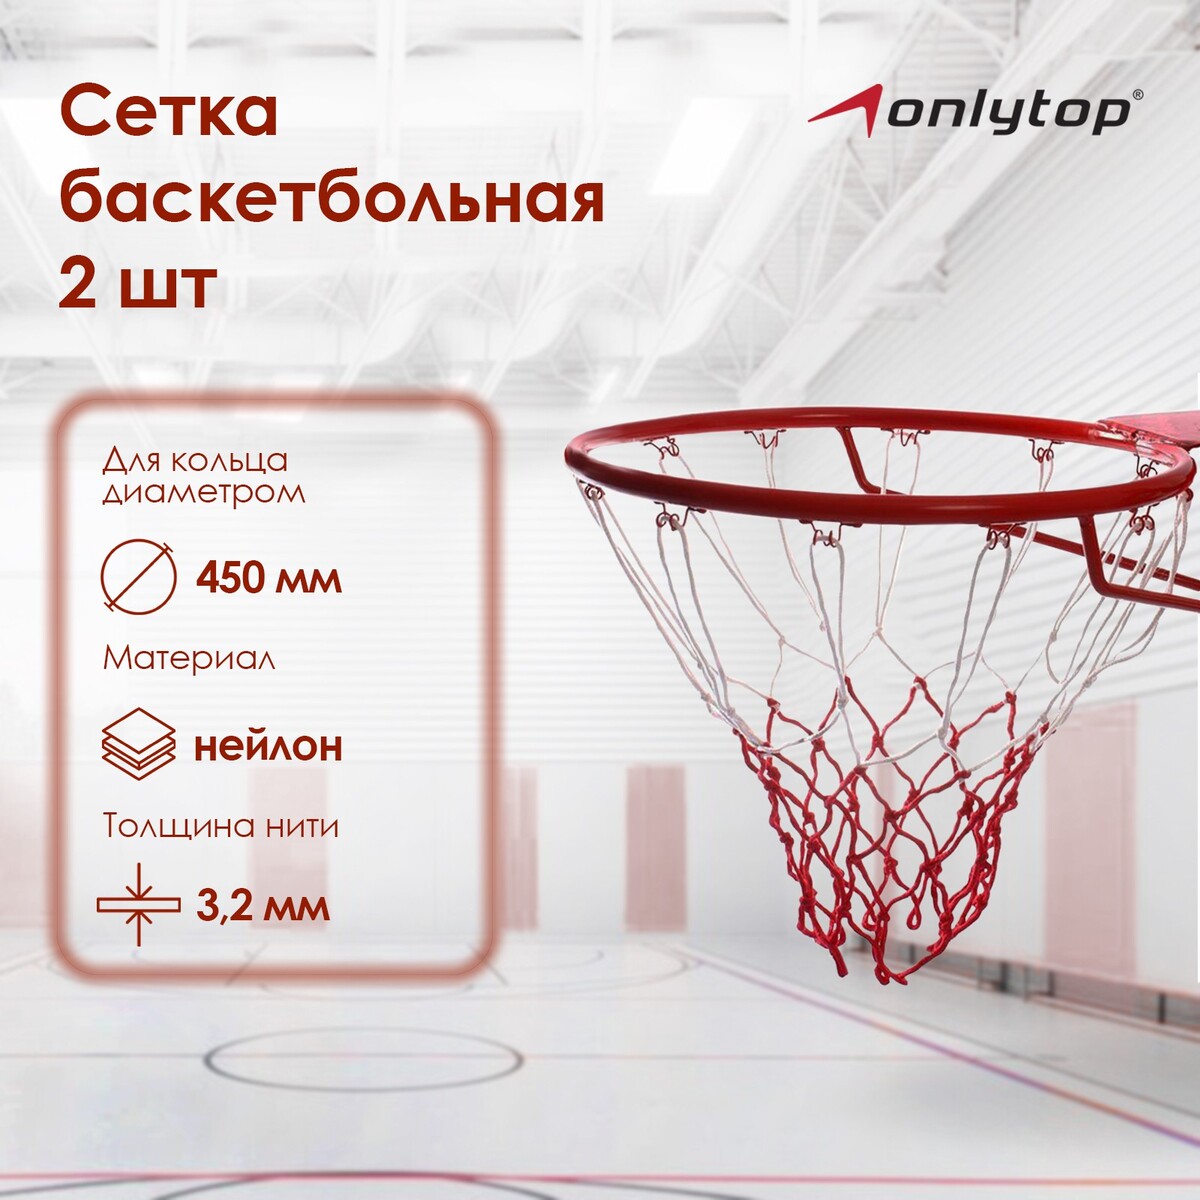 Сетка баскетбольная onlytop, 50 см, нить 3,2 мм, 2 шт. сетка для переноски мячей onlytop на 6 мячей нить 3 мм